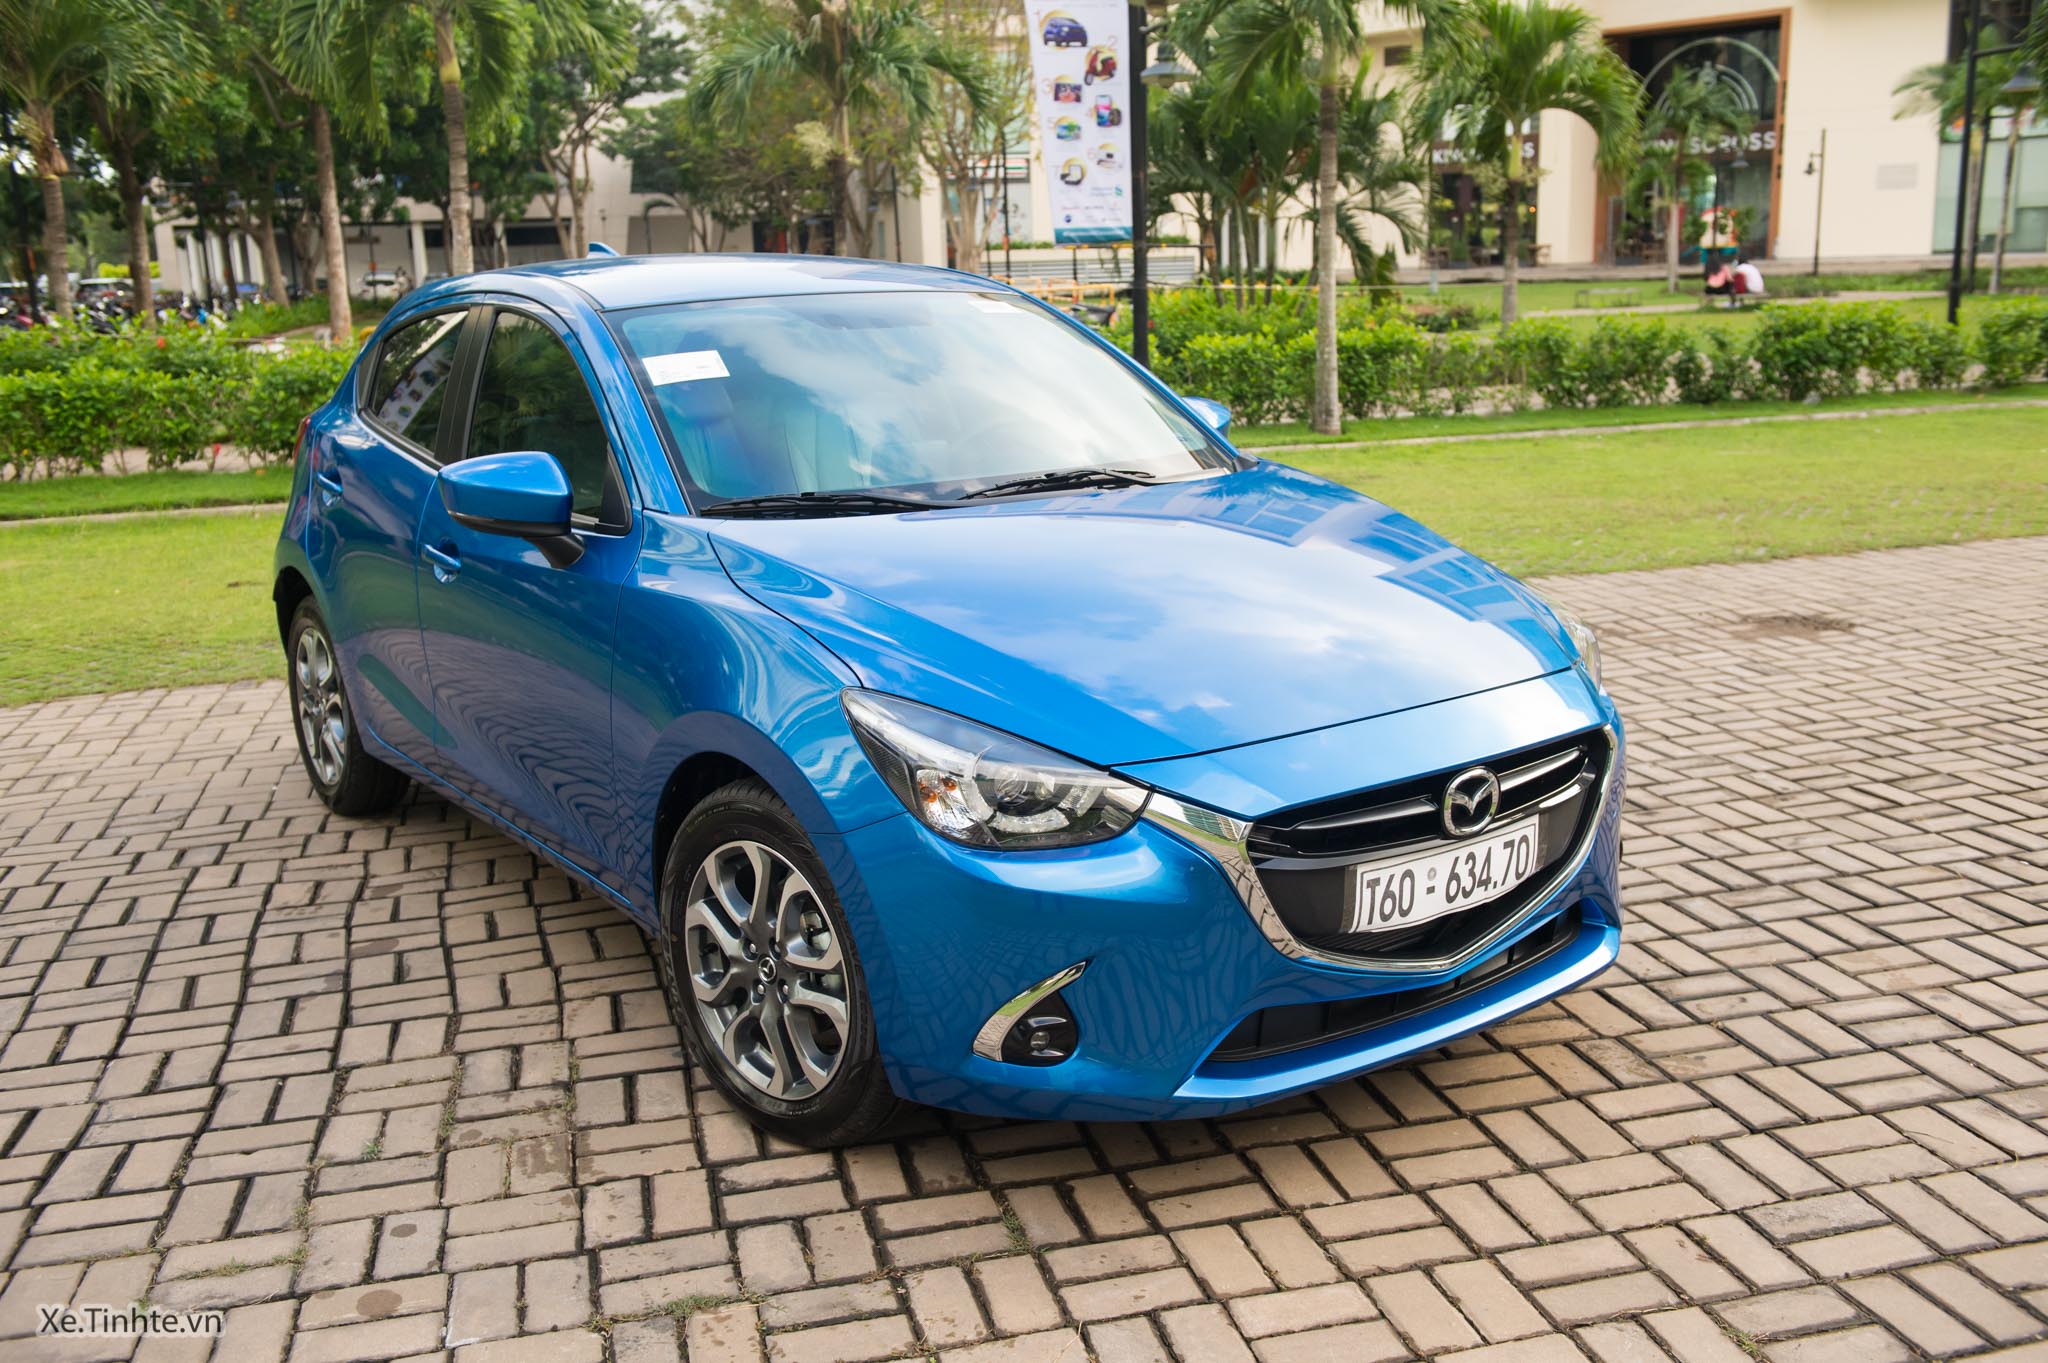 Mazda2 2019_Xe.tinhte.vn-8377.jpg